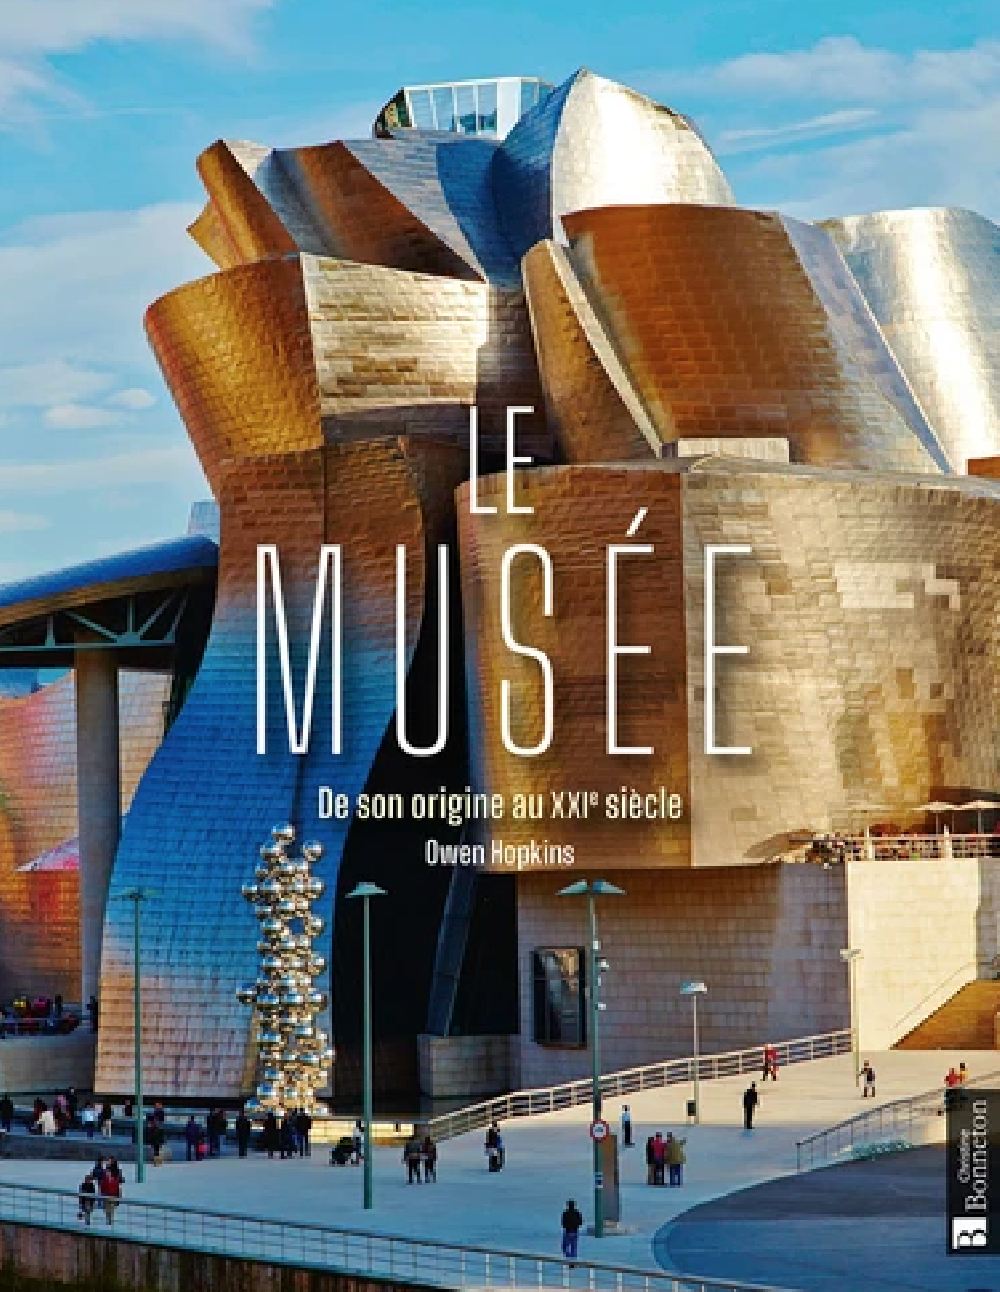 Le Musée - De son origine au XXIe siècle